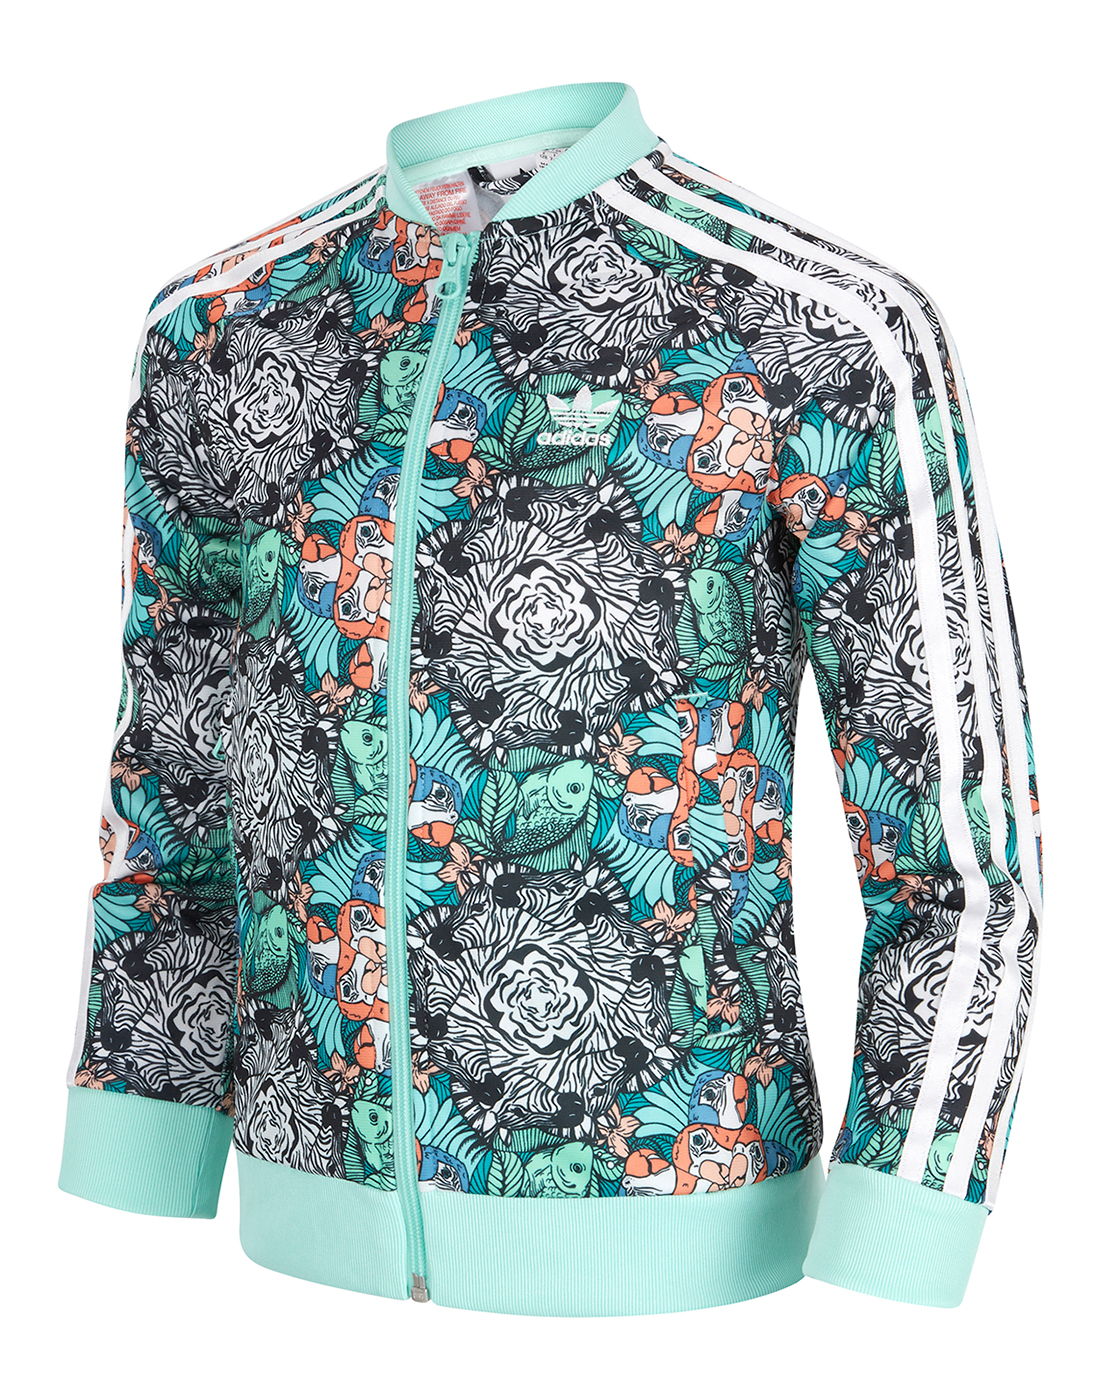 Shopping \u003e adidas zoo jacket, Up to 79% OFF